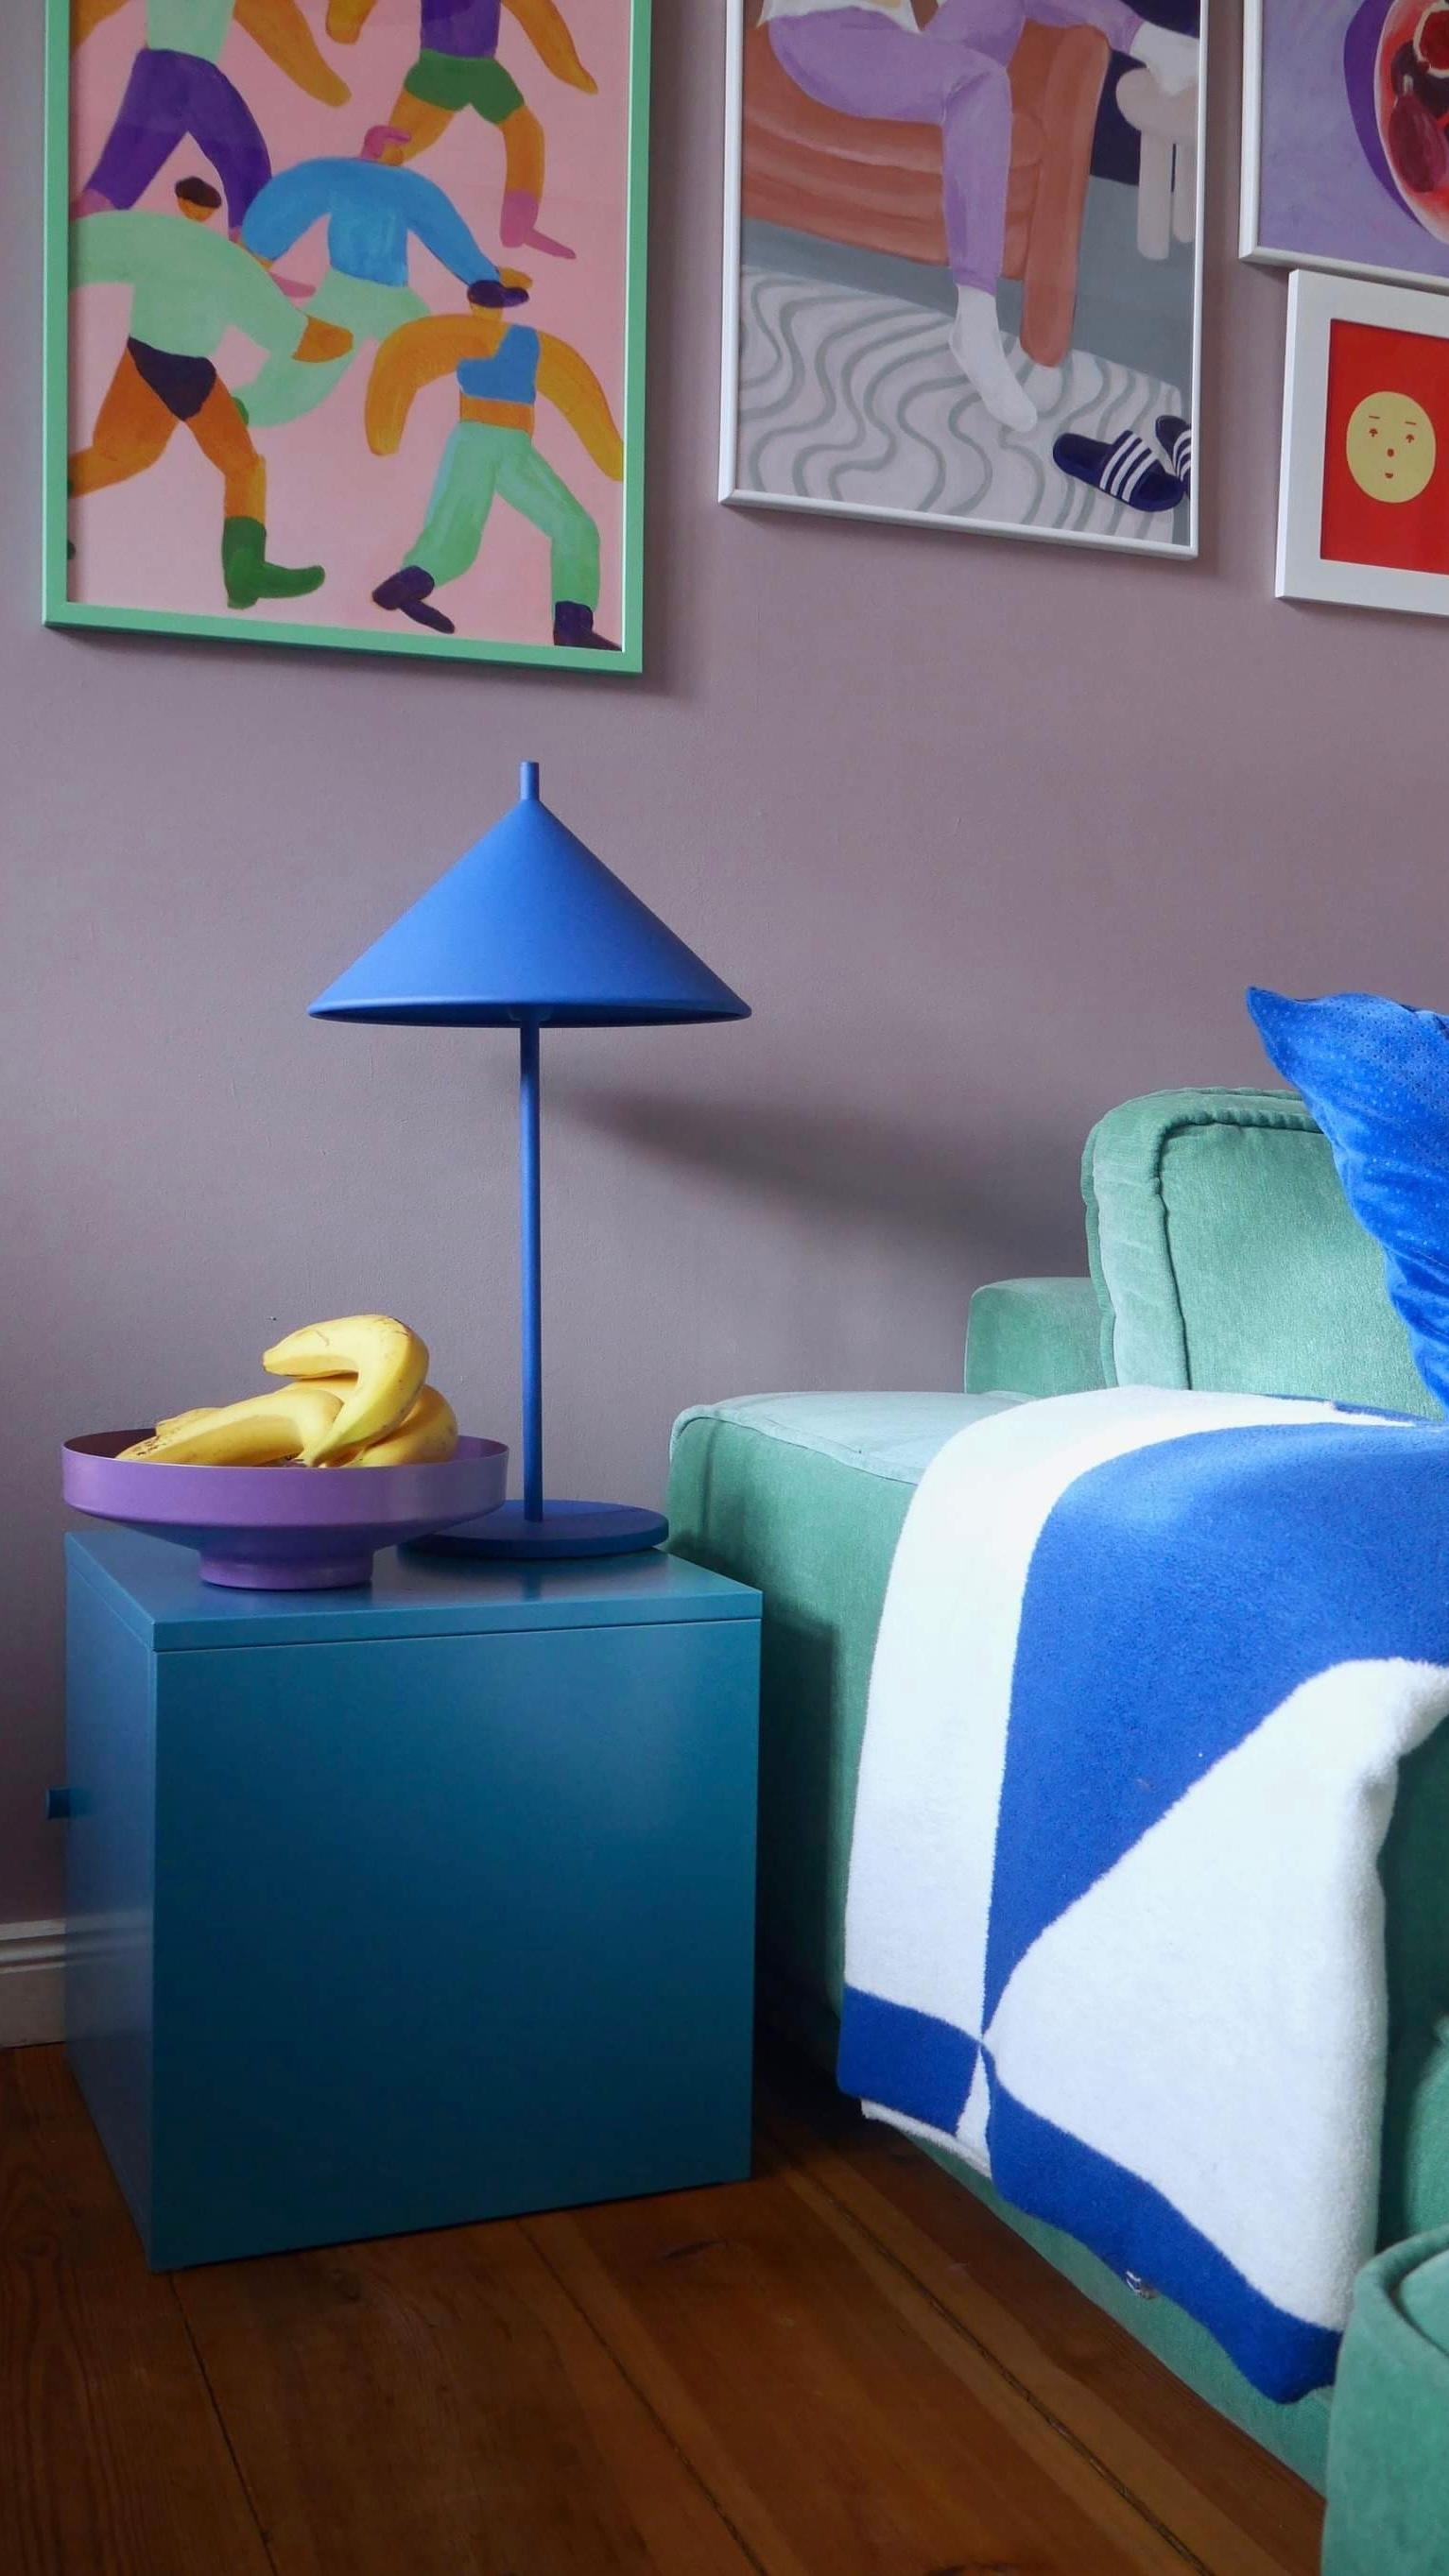 #couch #banane #lampe #wohnzimmer #bunt #gemütlich 